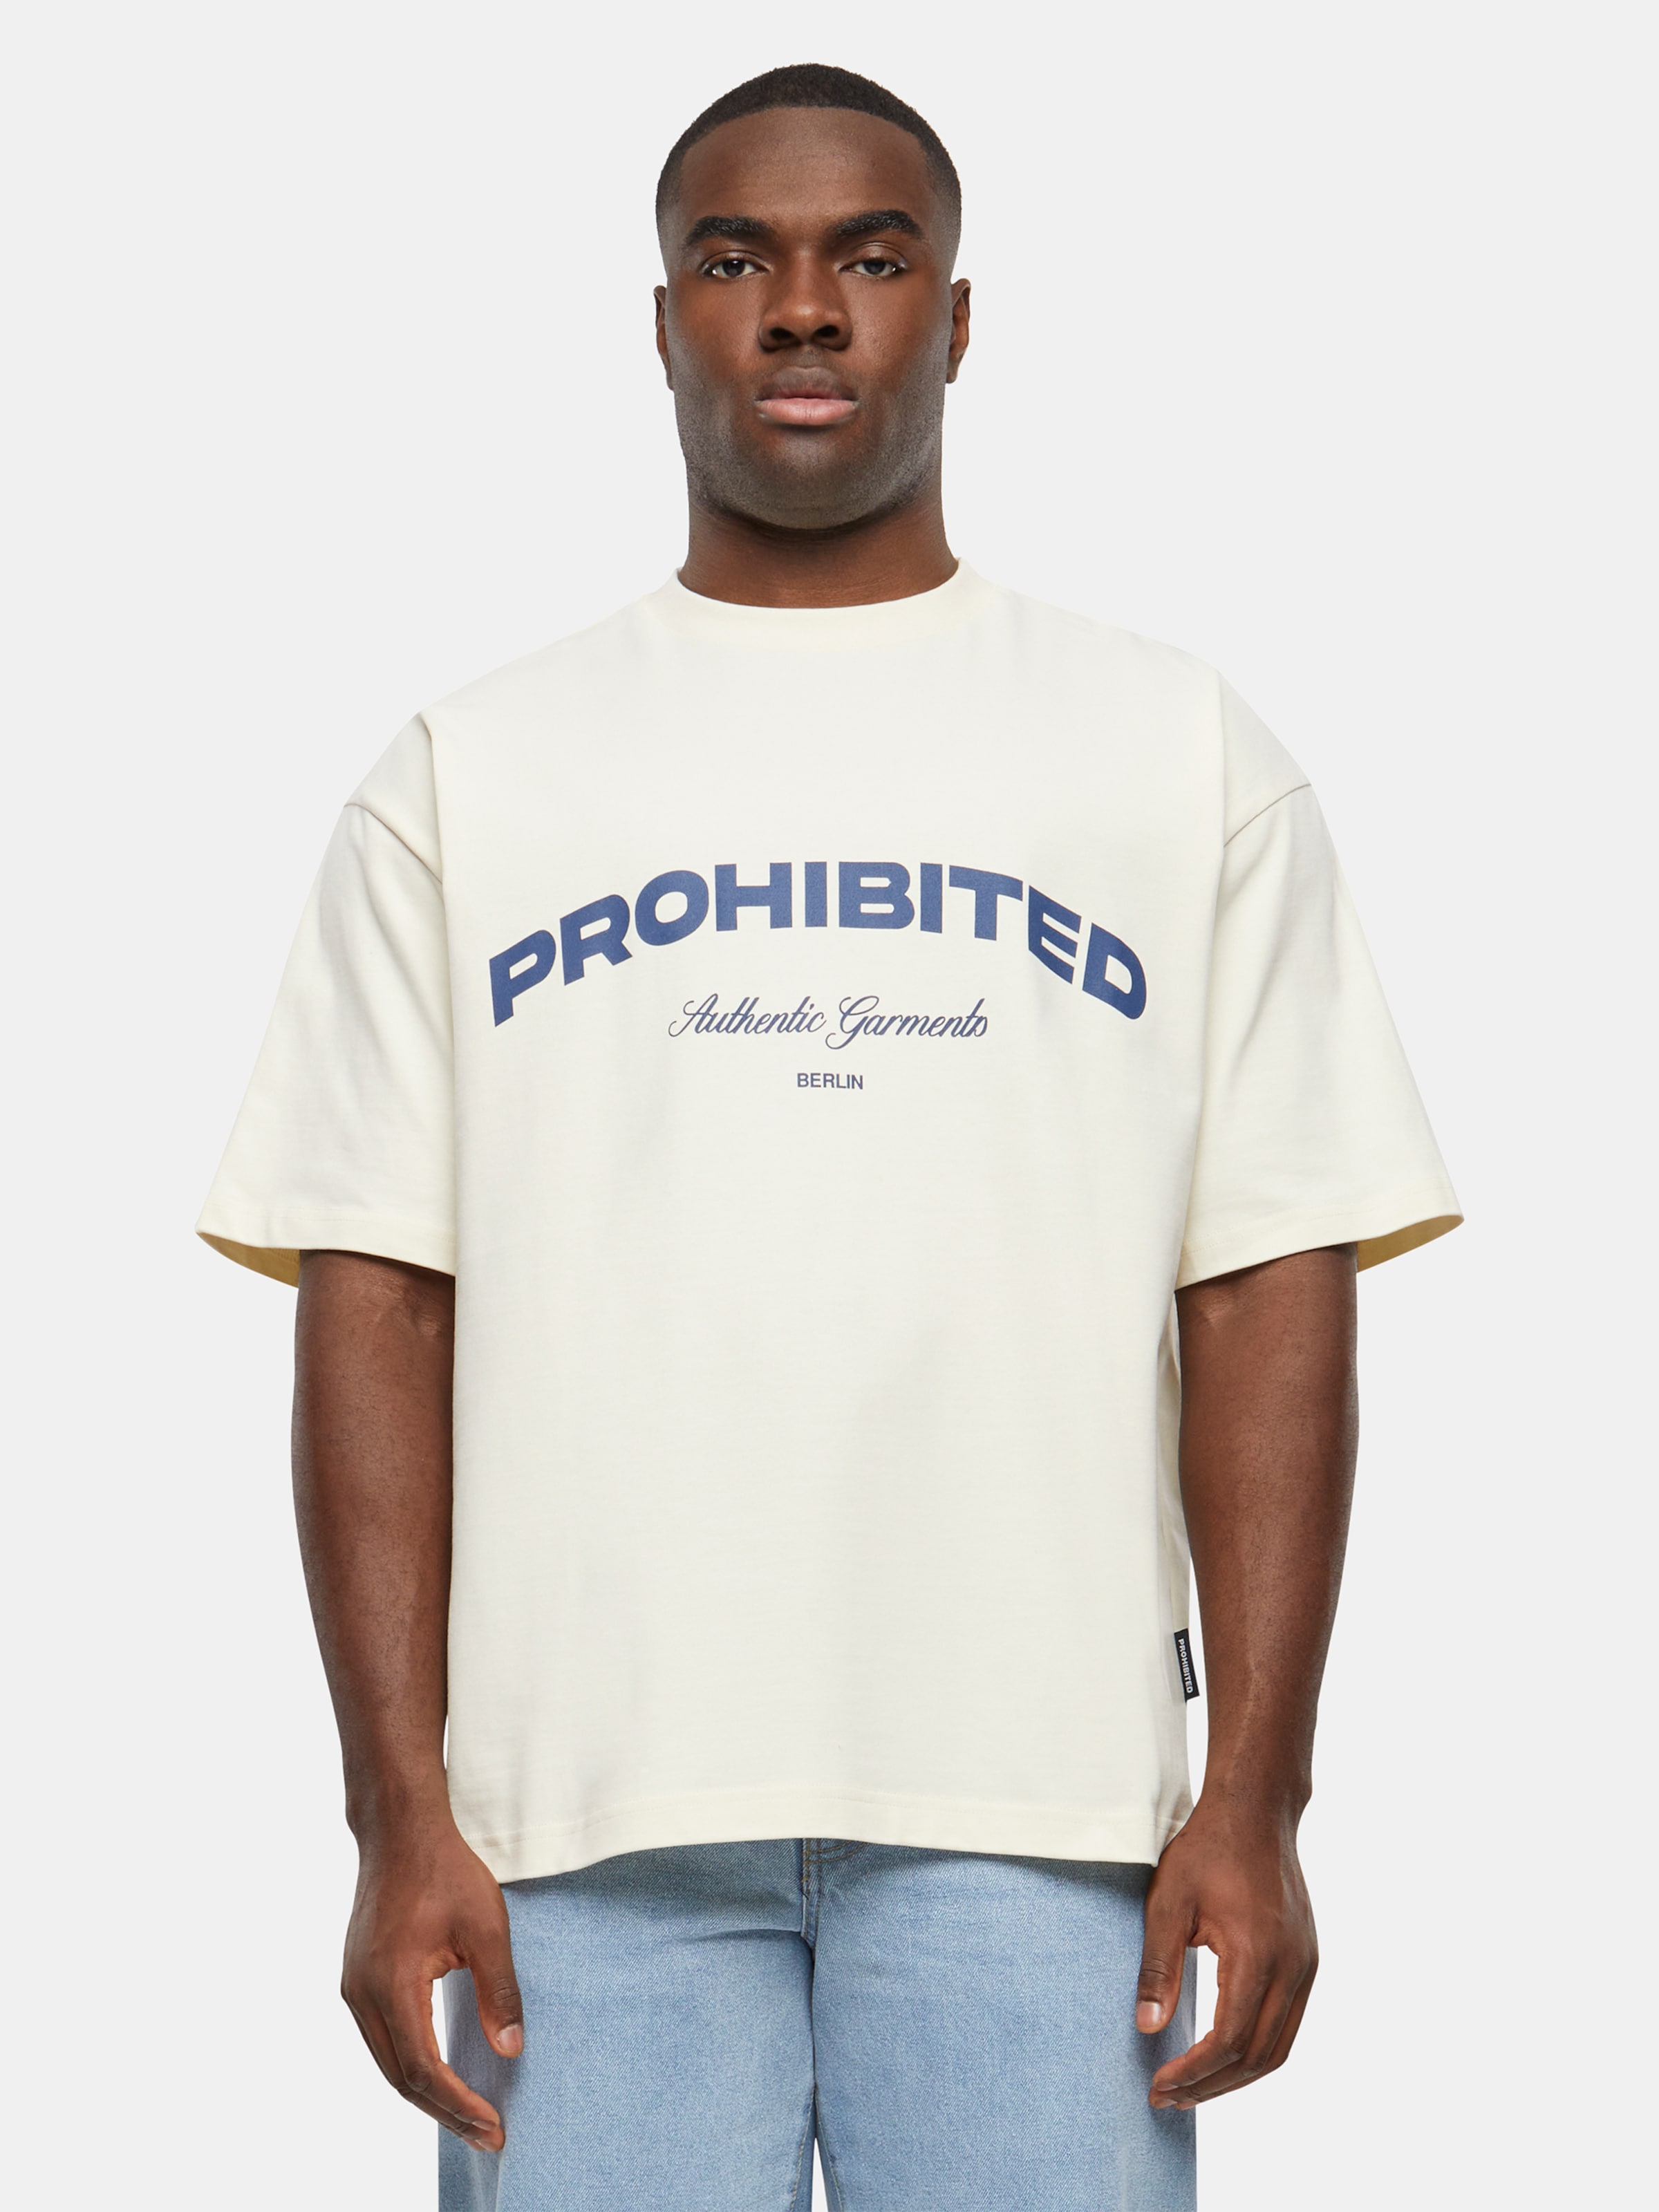 Prohibited Authentic T Shirts Männer,Unisex op kleur wit, Maat L